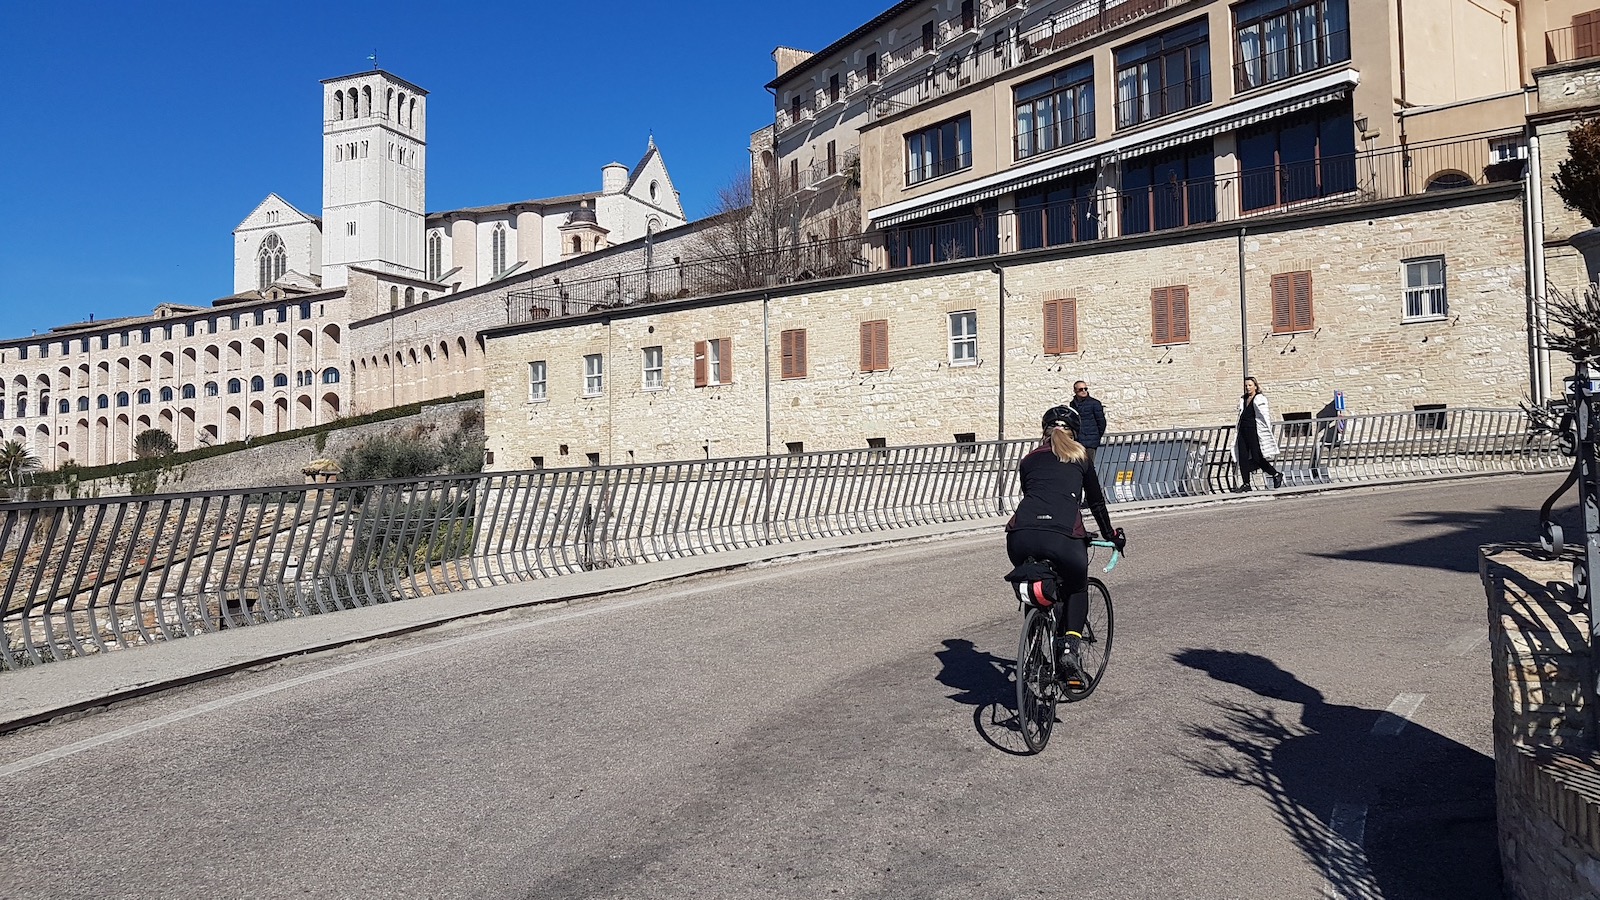 Assisi-Spello12